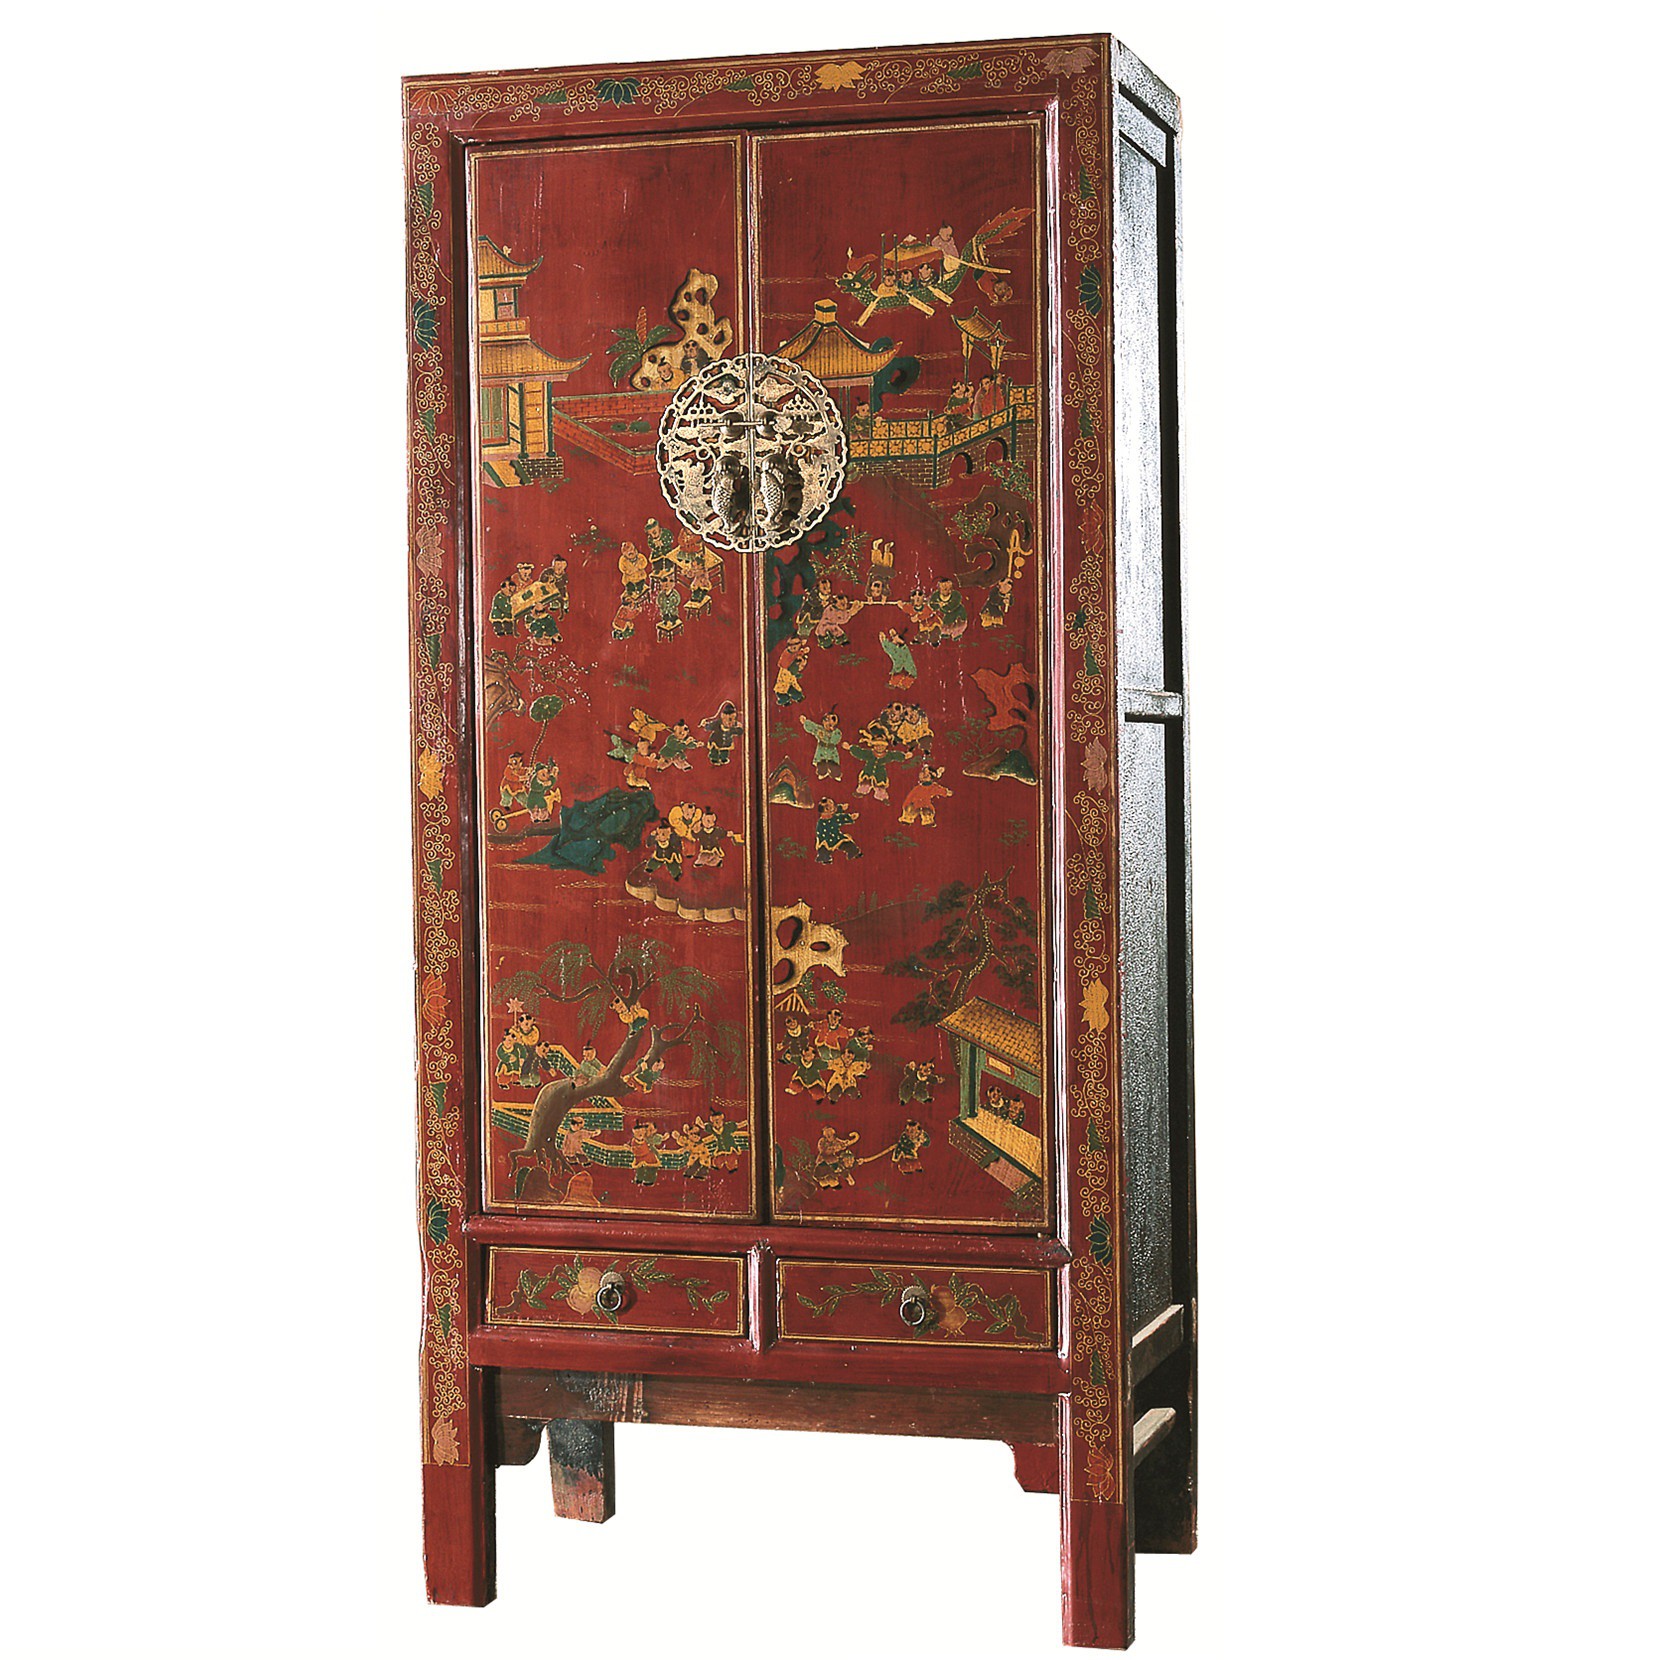 Китайская мебель купить. Китайский шкафчик. Шкаф в китайском стиле. Тайская традиционная мебель. Традиционная китайская мебель.